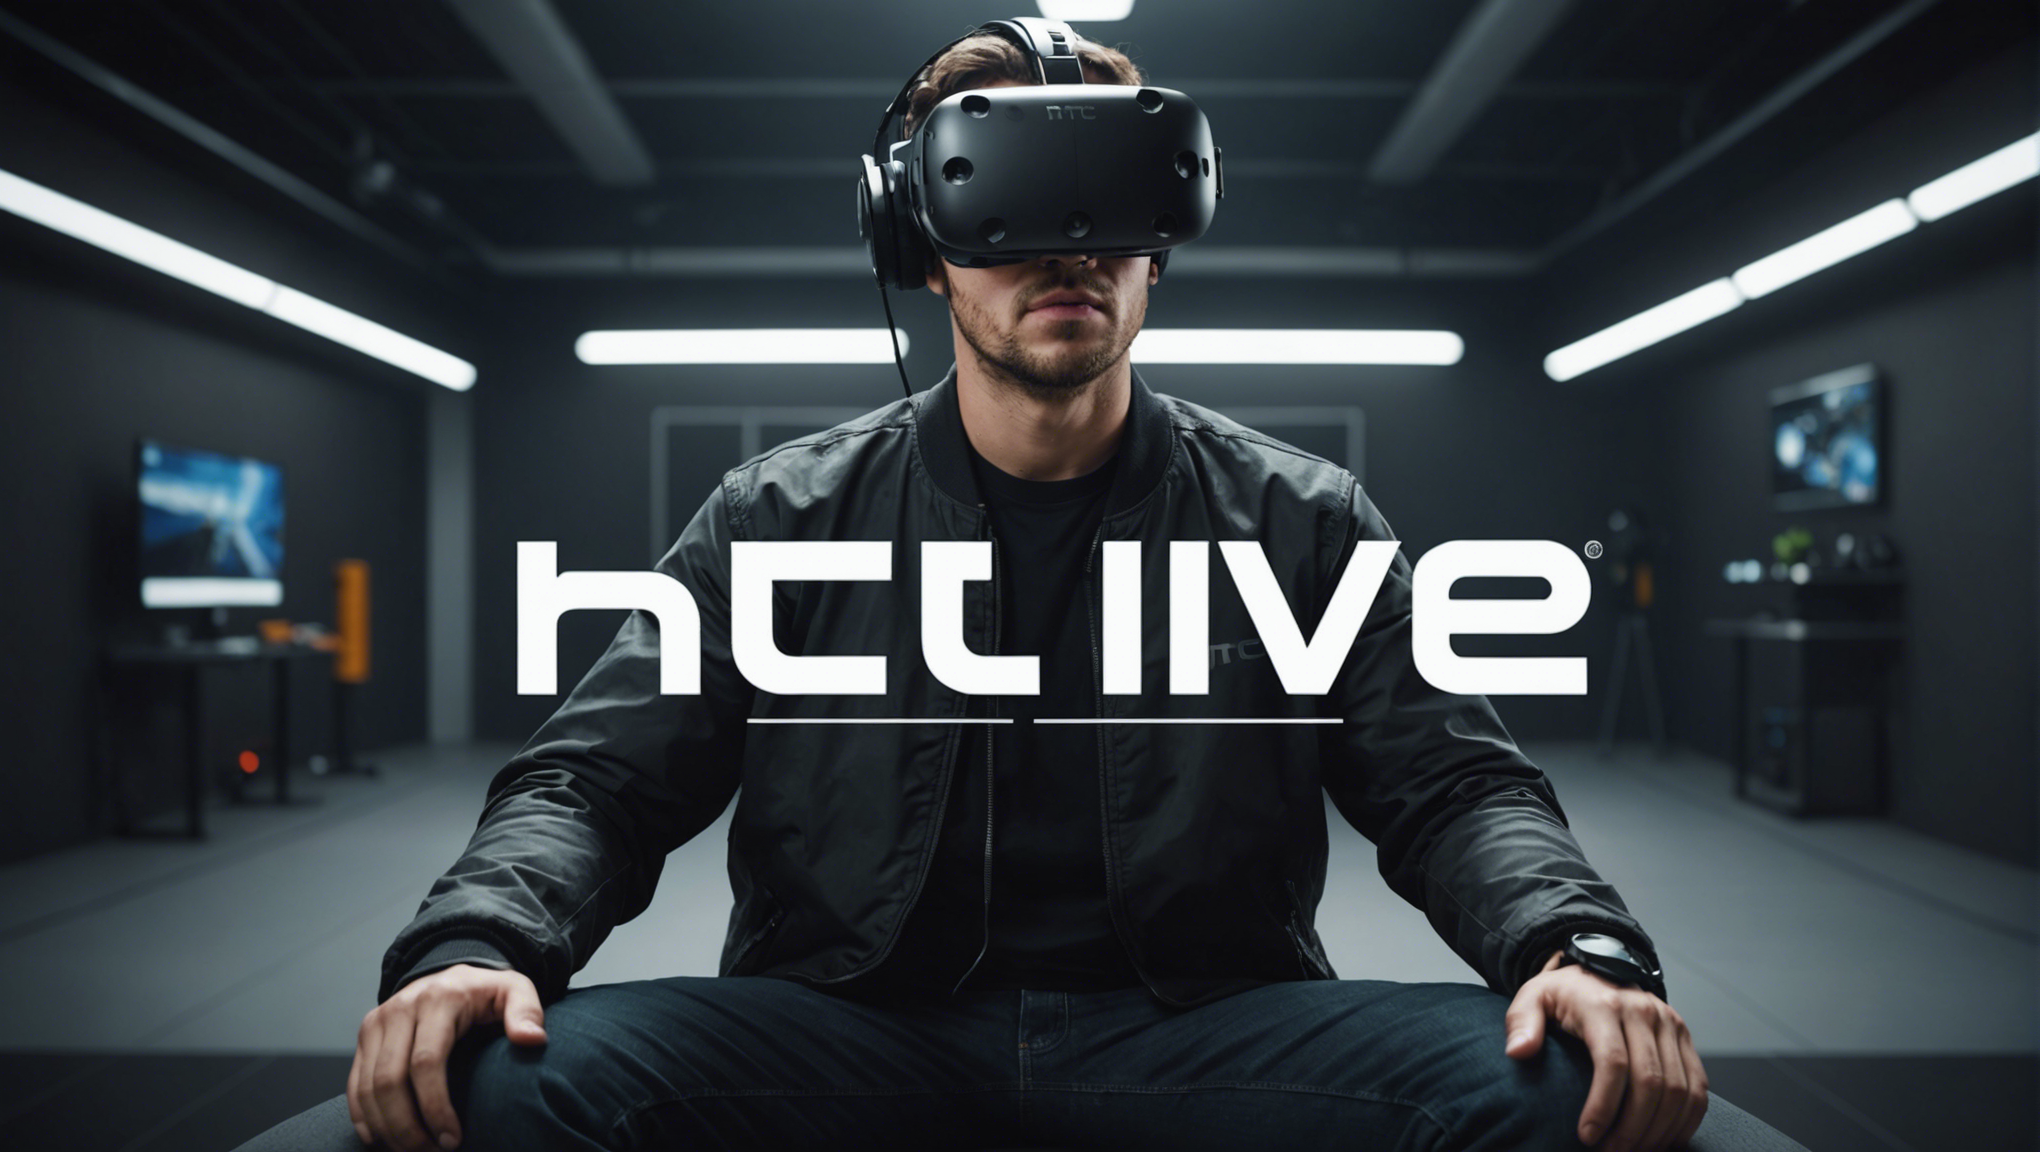 découvrez tout ce qu'il faut savoir sur le htc vive, un casque de réalité virtuelle révolutionnaire pour une expérience immersive inégalée.